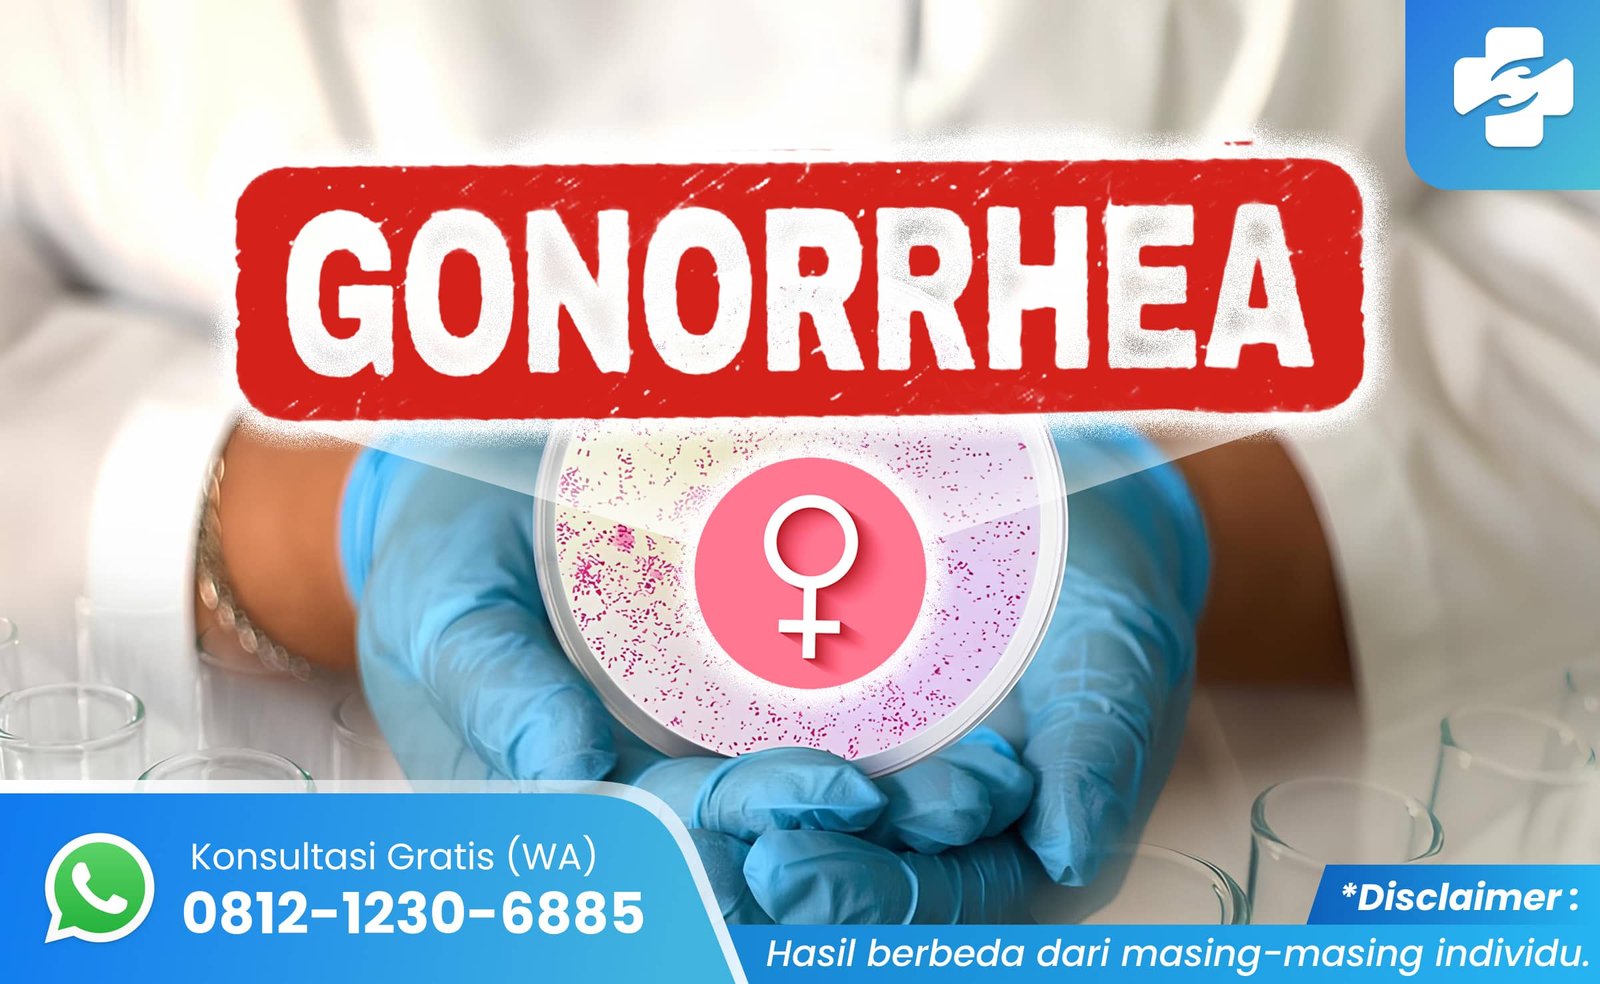 ciri-ciri gonore pada wanita mengancam nyawa